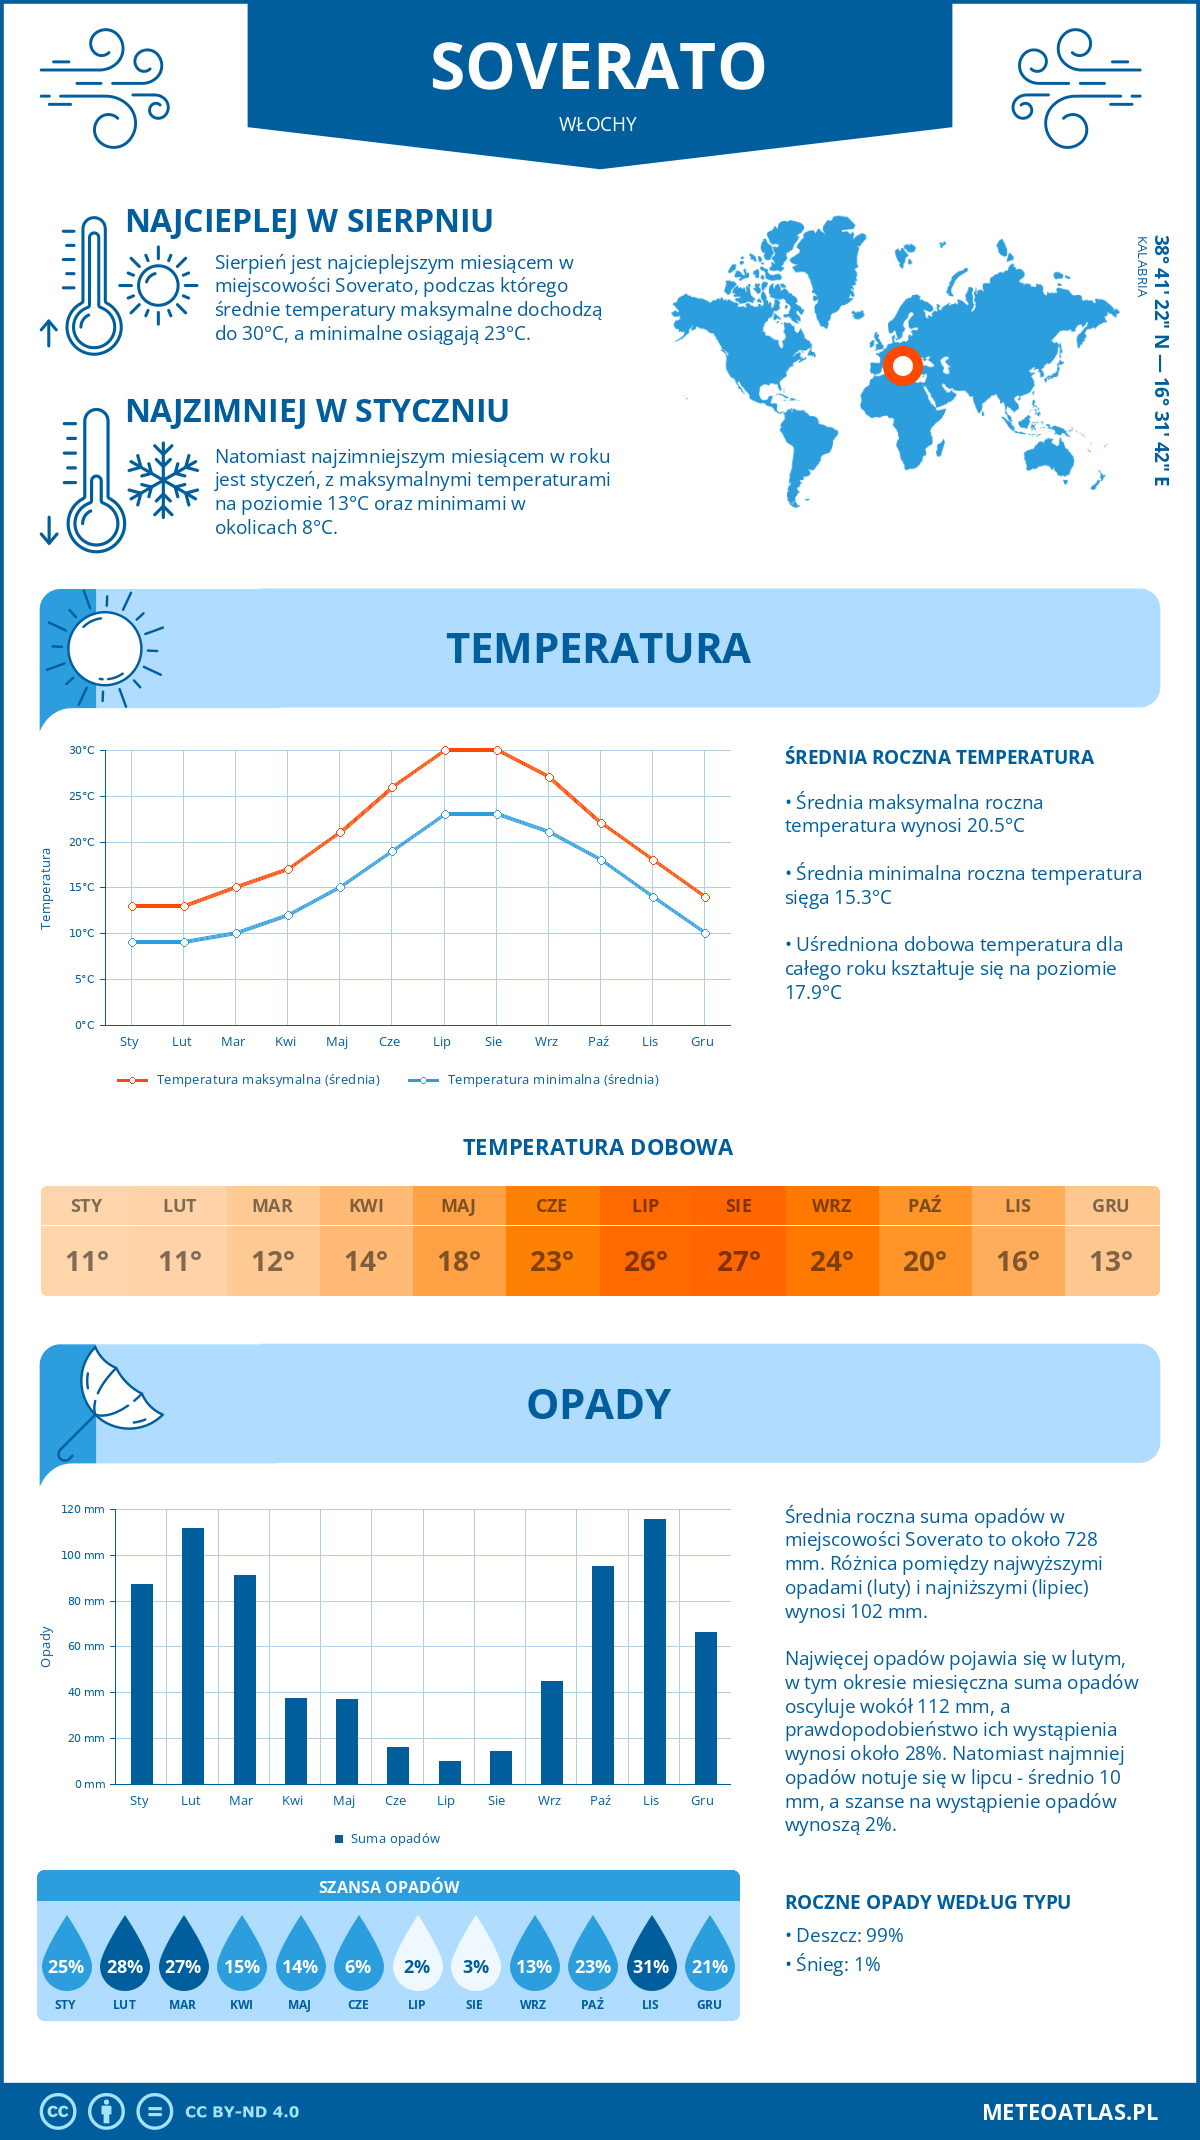 Pogoda Soverato (Włochy). Temperatura oraz opady.